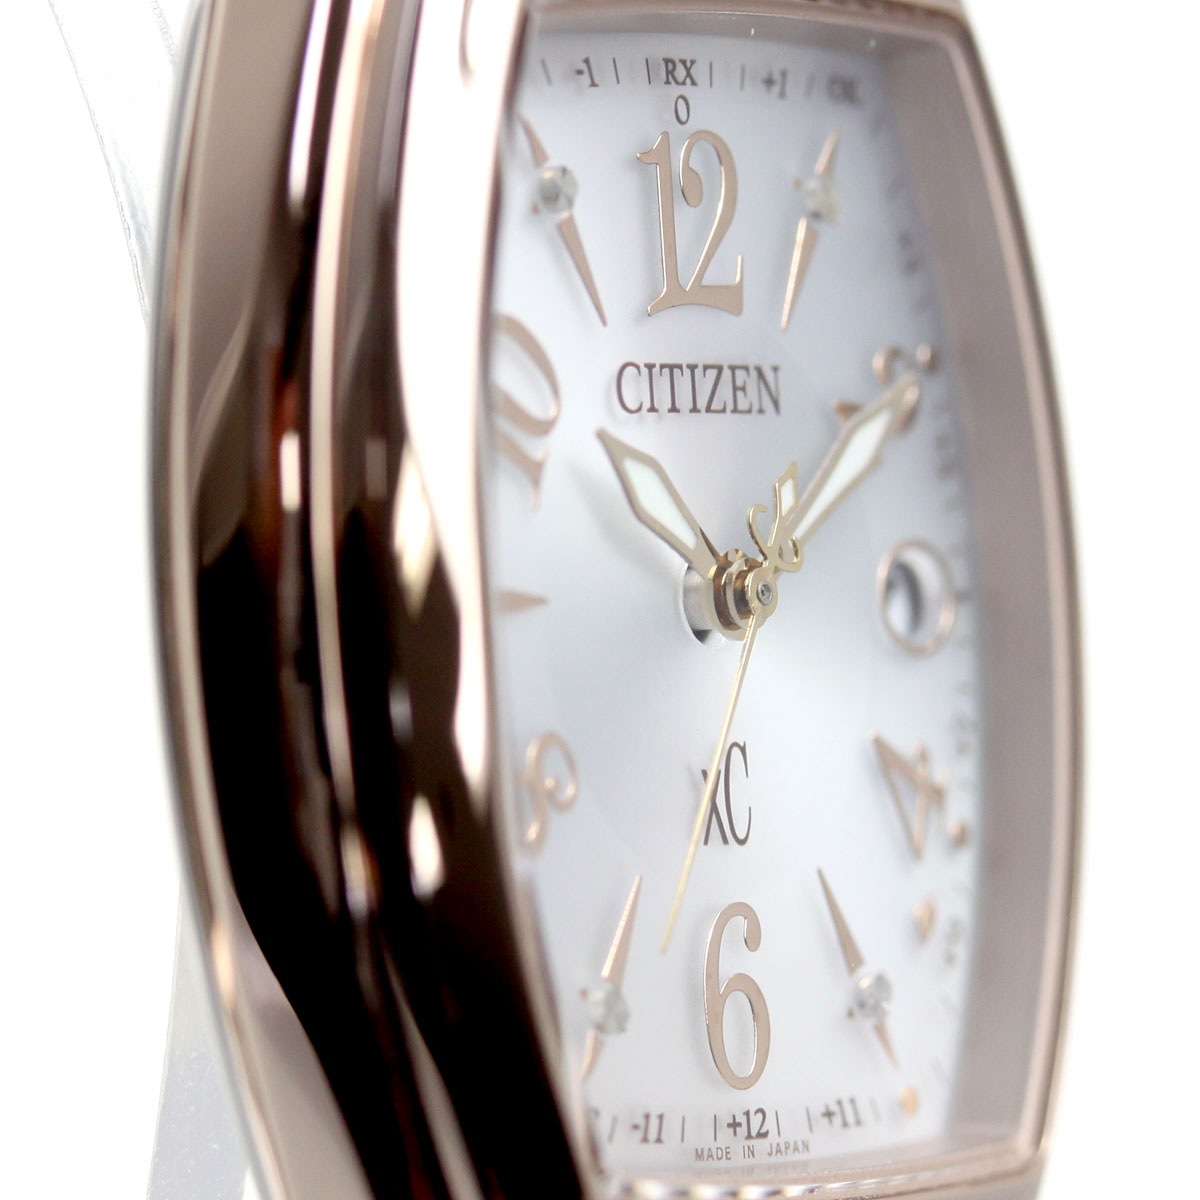 シチズン クロスシー CITIZEN xC エコドライブ 電波時計 ステンレススチールライン ハッピーフライト 腕時計 レディース ES9394-56A